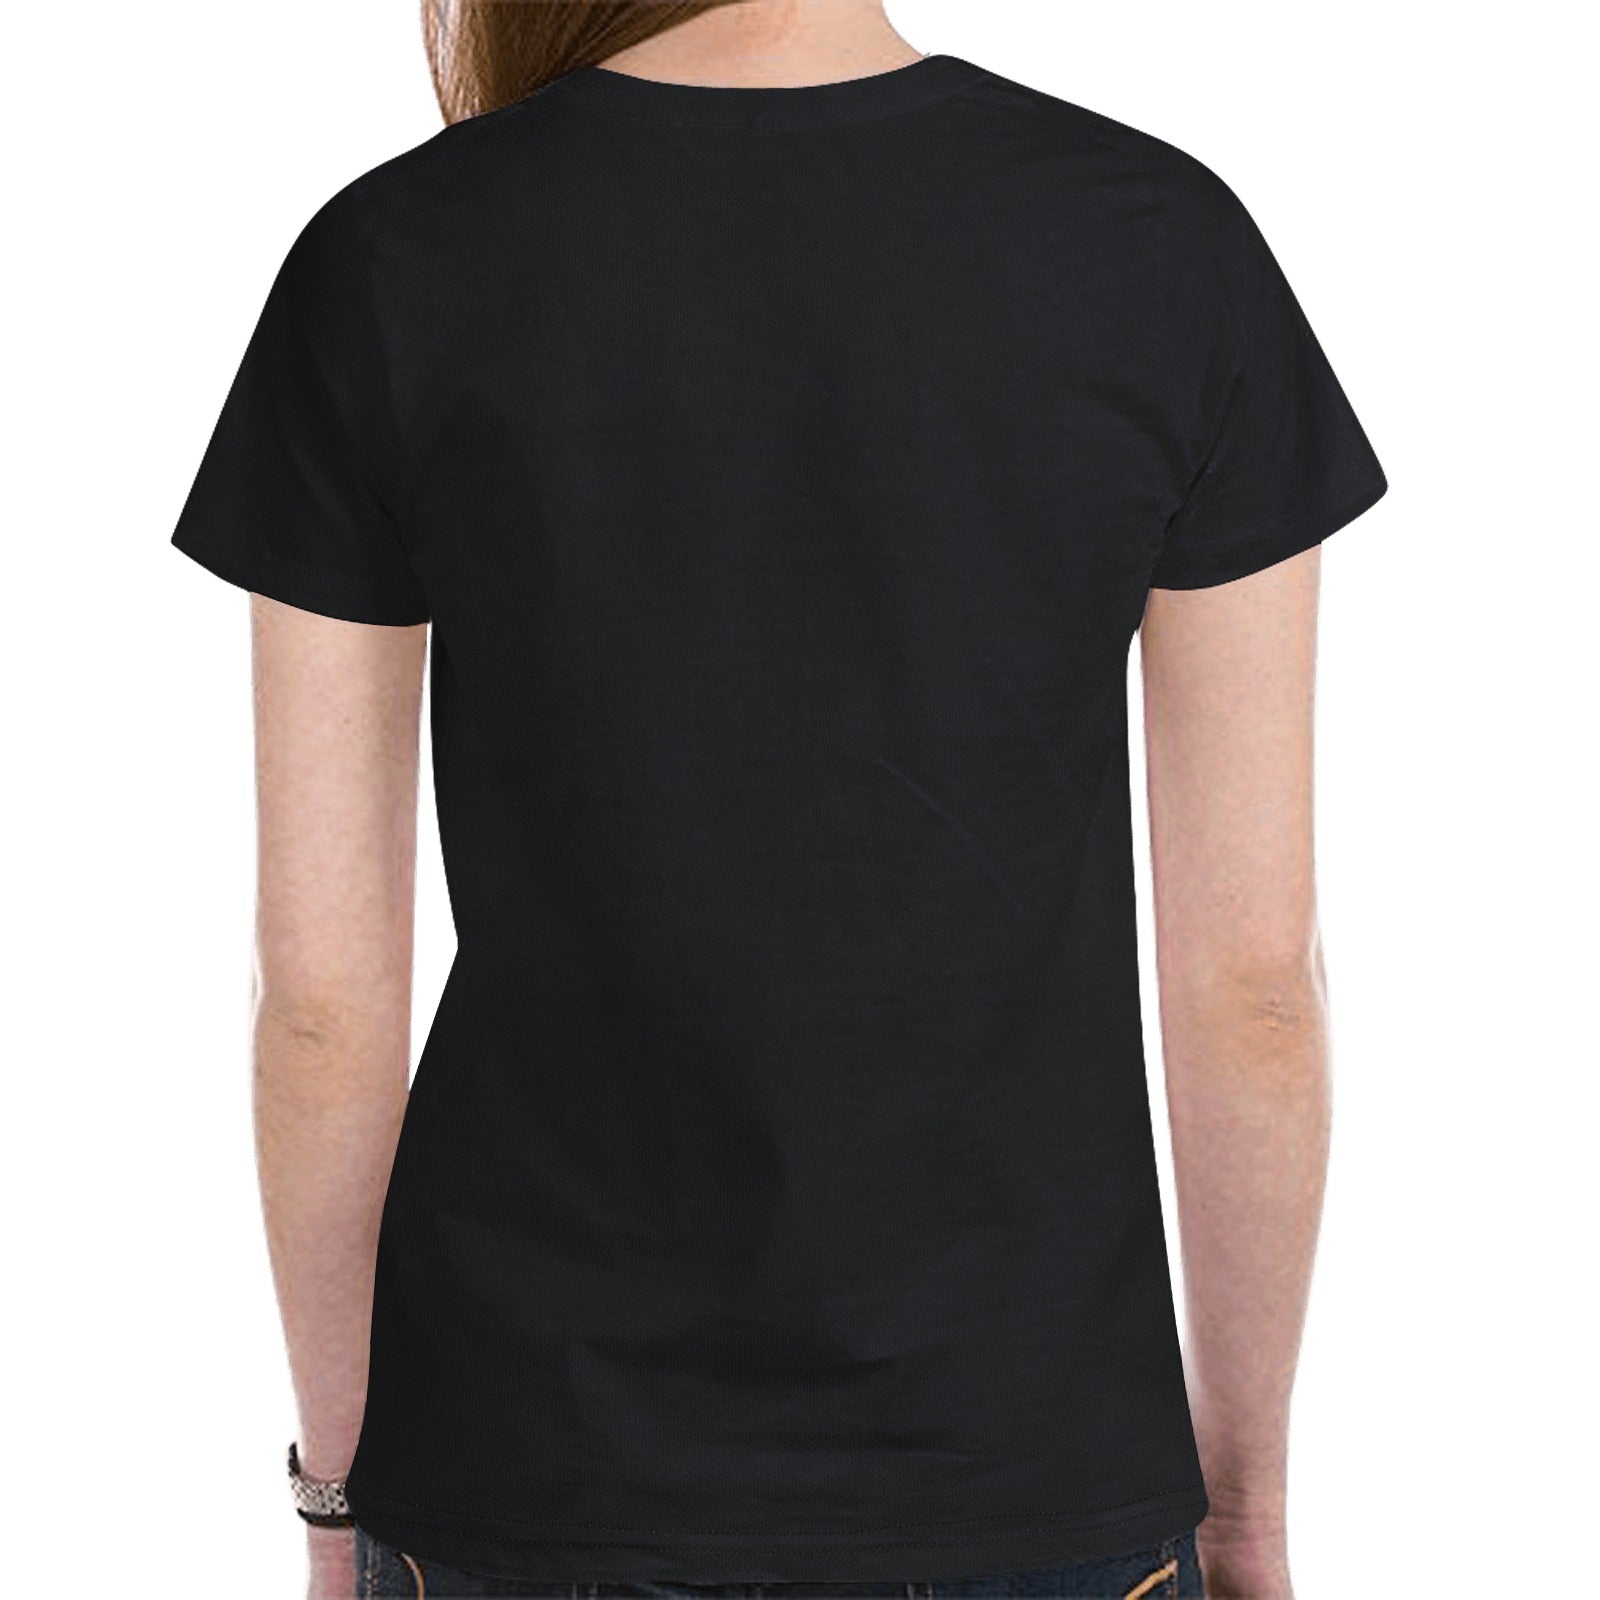 Horse Spirit Guide (Black) T-shirt for Women